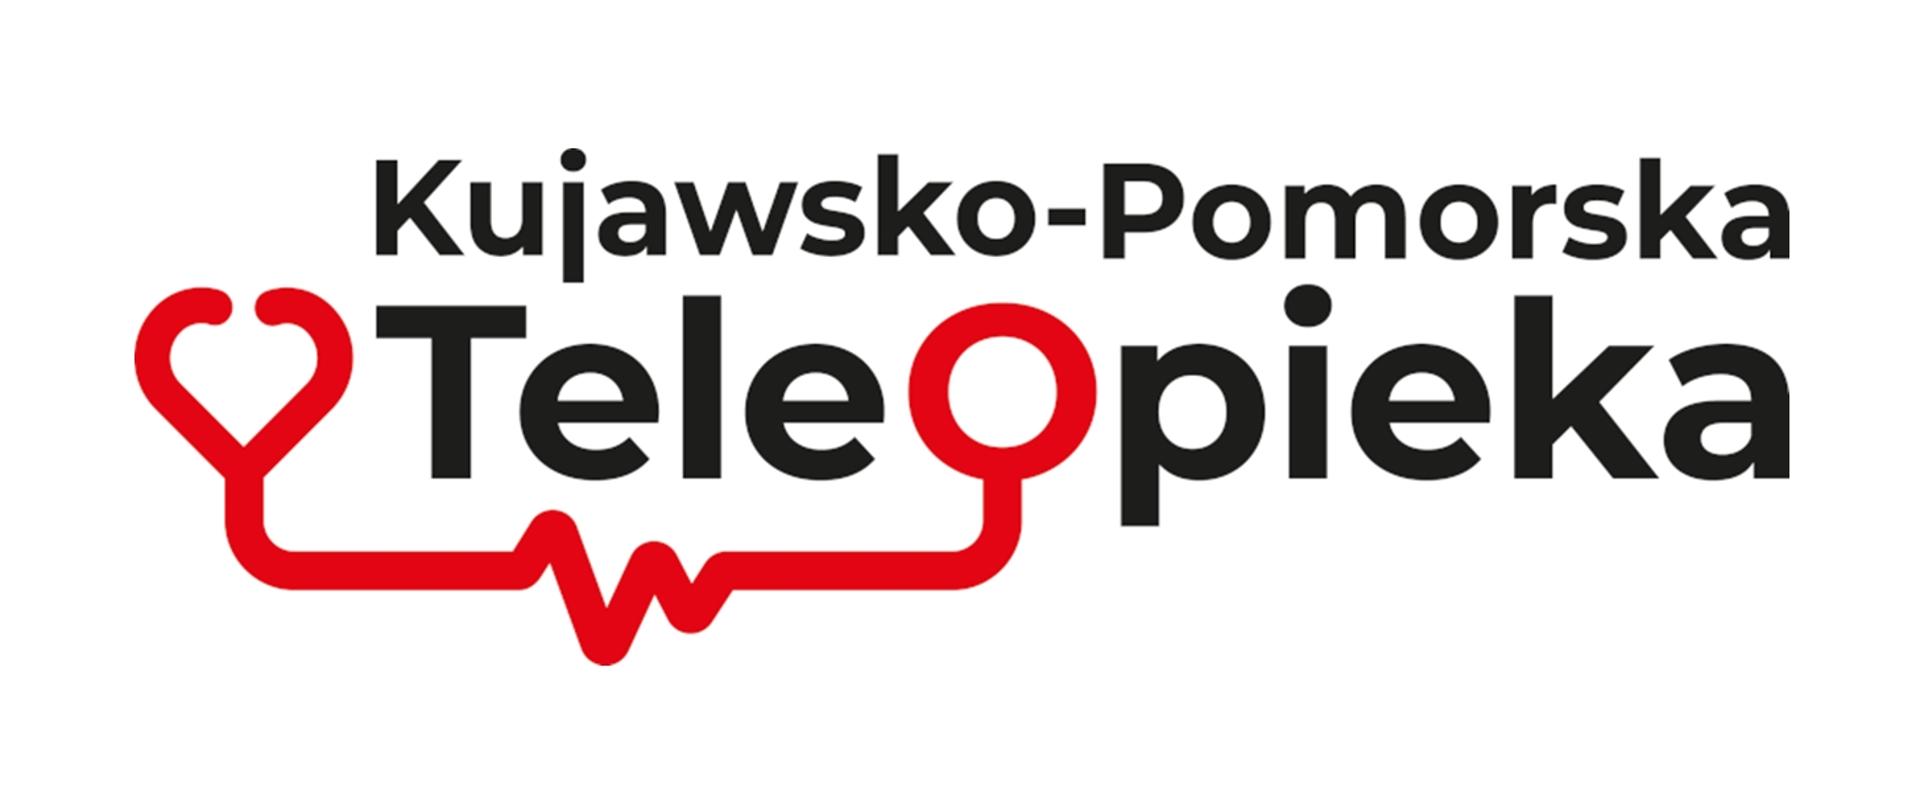 grafika przedstawia logotyp z napisem Kujawsko-Pomorska Teleopieka 